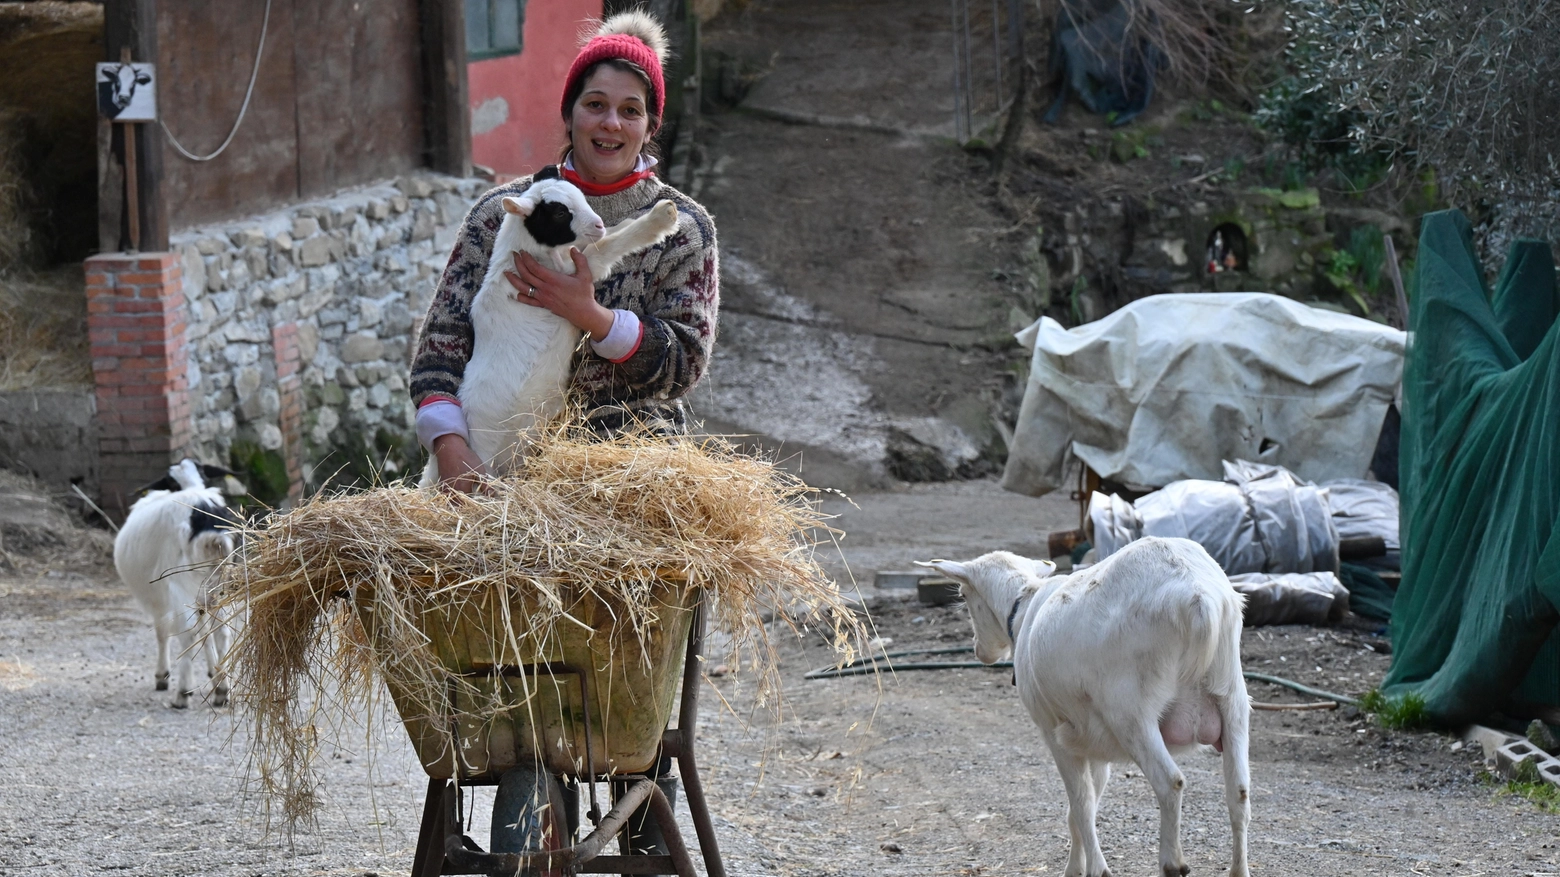 Gabriella Michelozzi nella sua azienda agricola in provincia di Pistoia